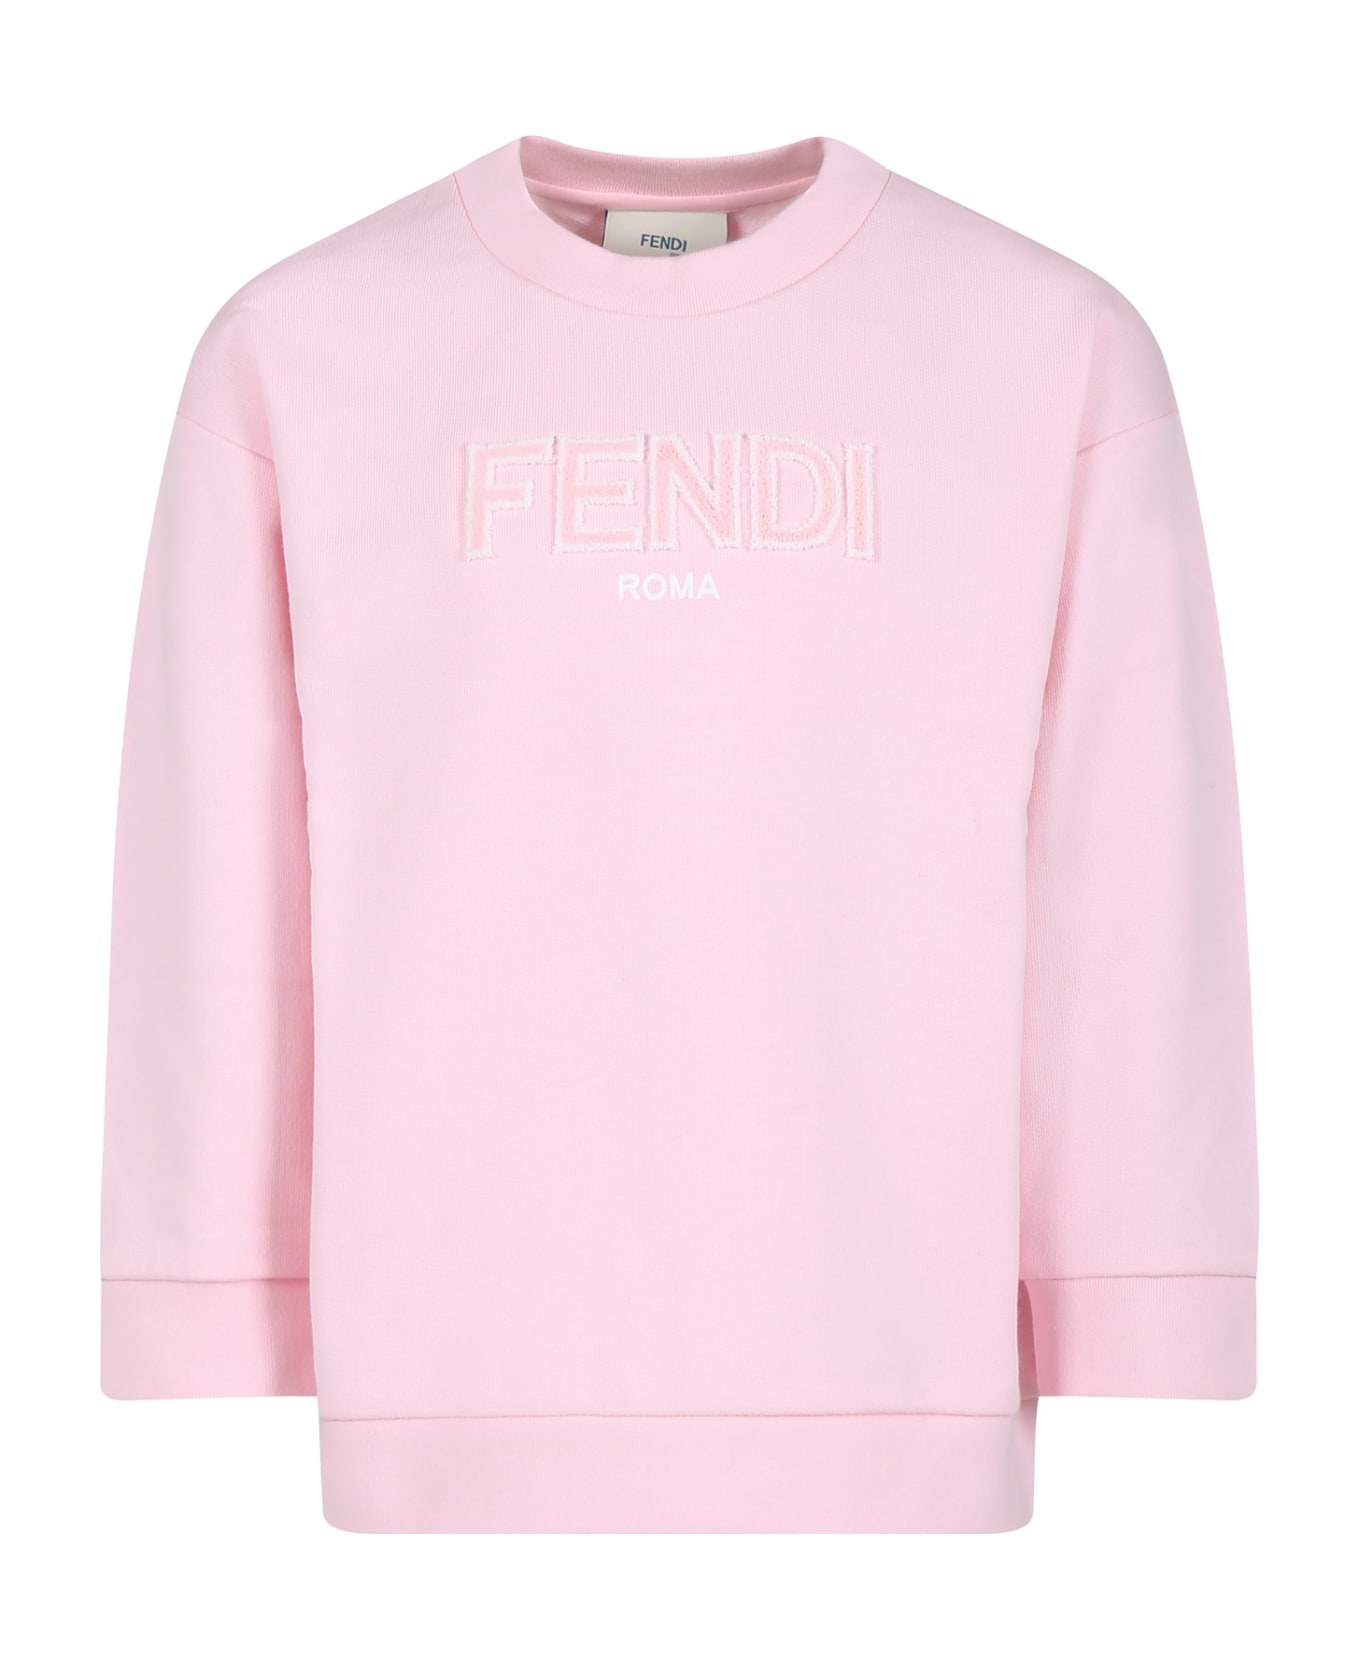 Fendi Pink Sweatshirt For Girl With Fendi Logo - Pink